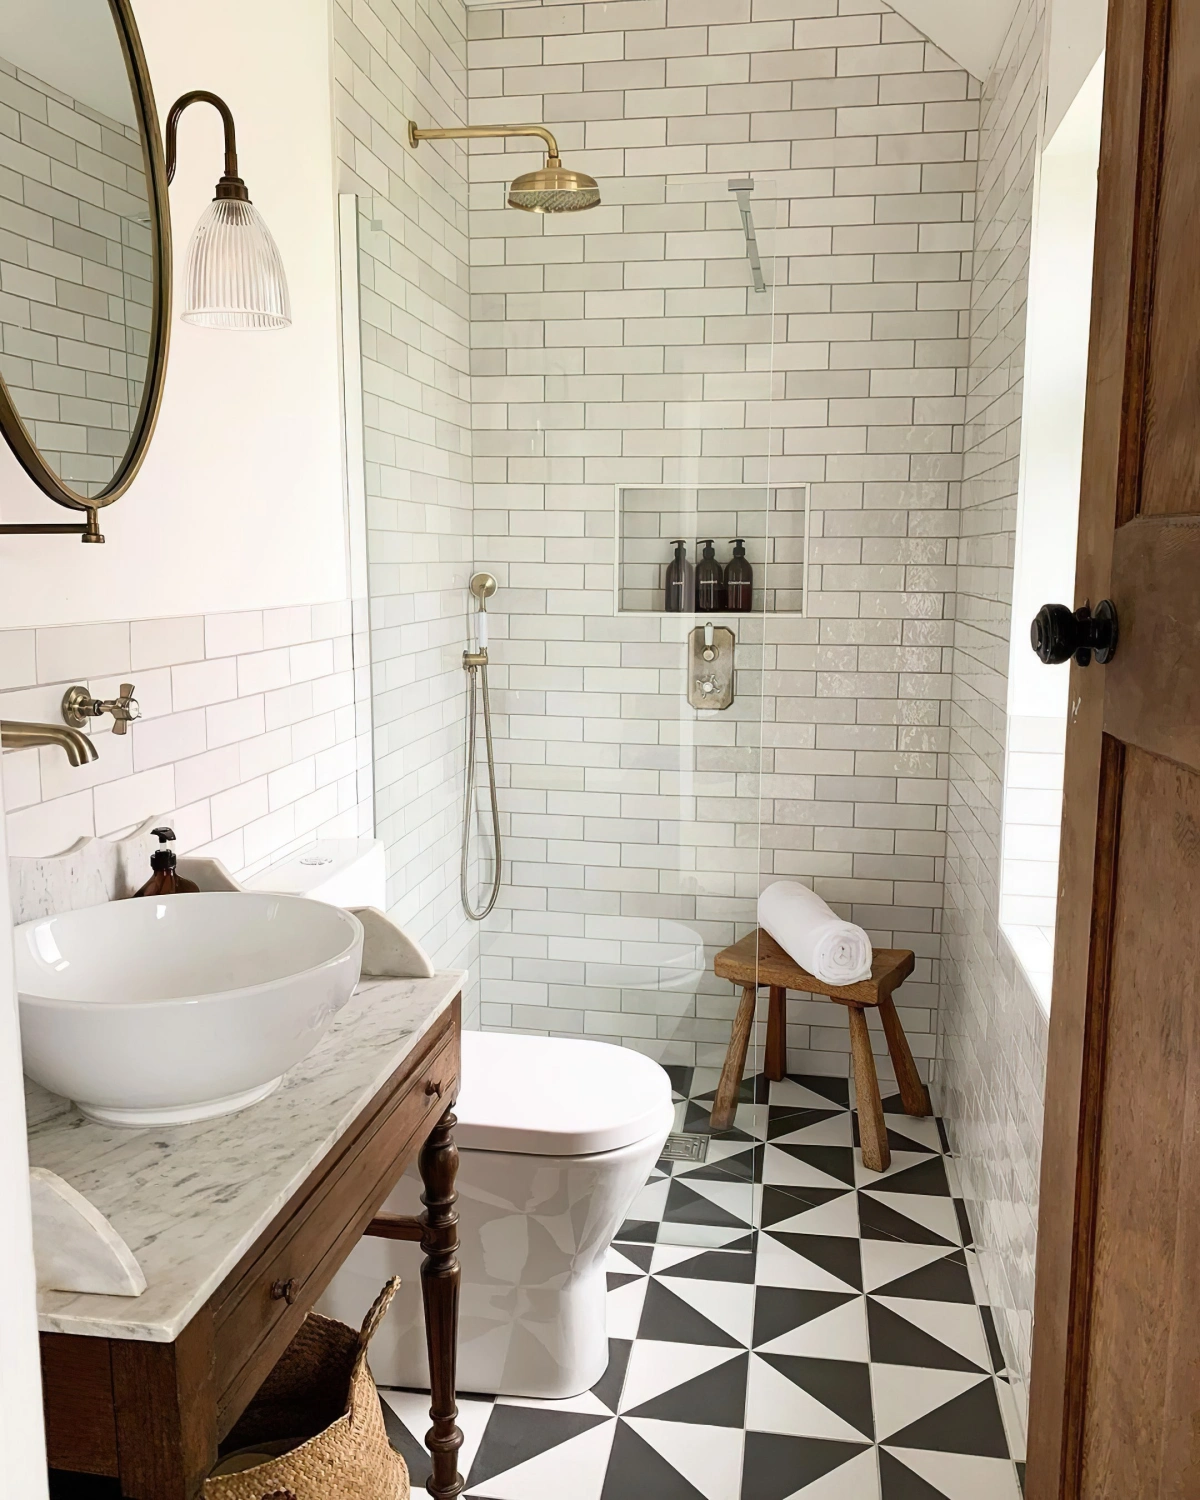 salle de bain italienne petite surface carrelage blanc et noir douche or